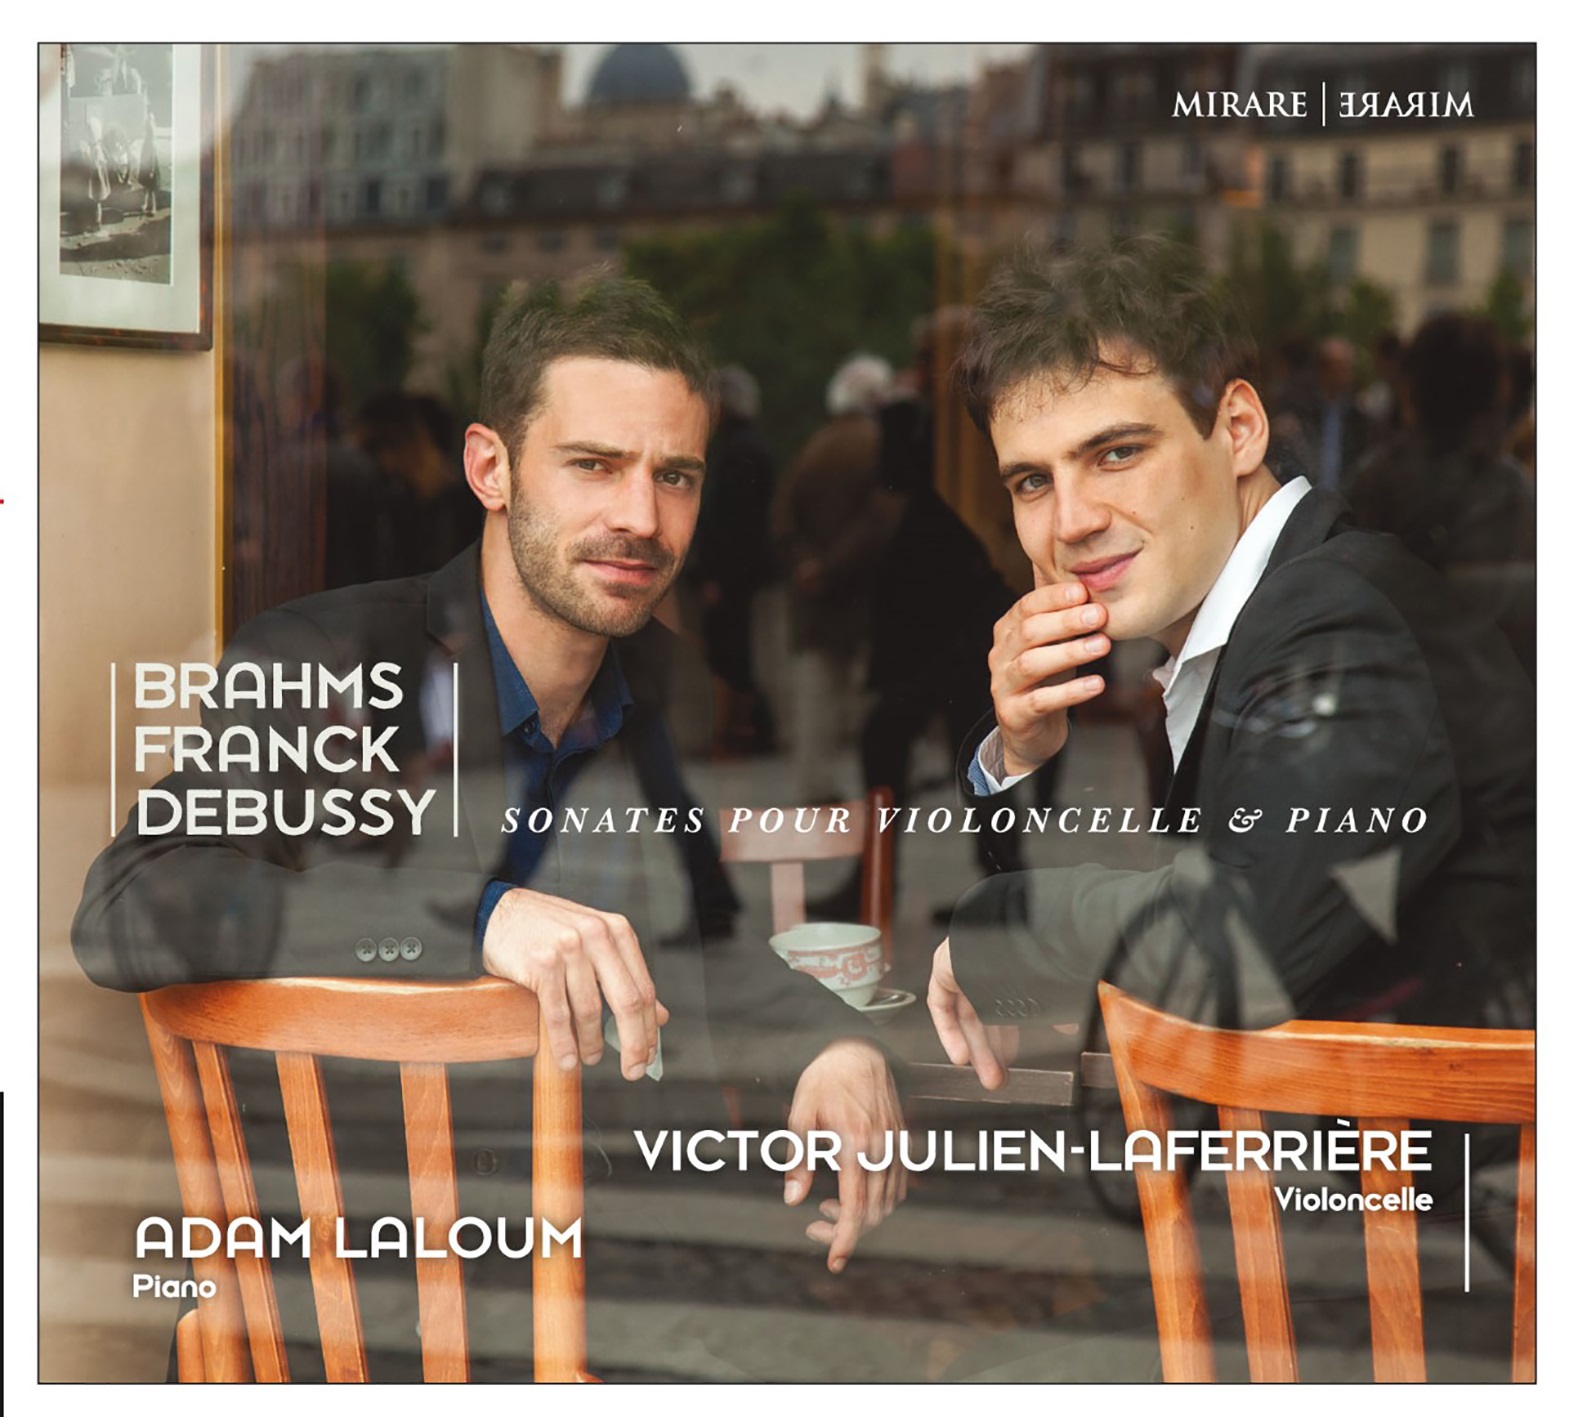 Sonates pour violoncelle & piano Johannes Brahms, Claude Debussy, César Franck, comp. Victor Julien-Lafferrière, violoncelle Adam Laloum, piano